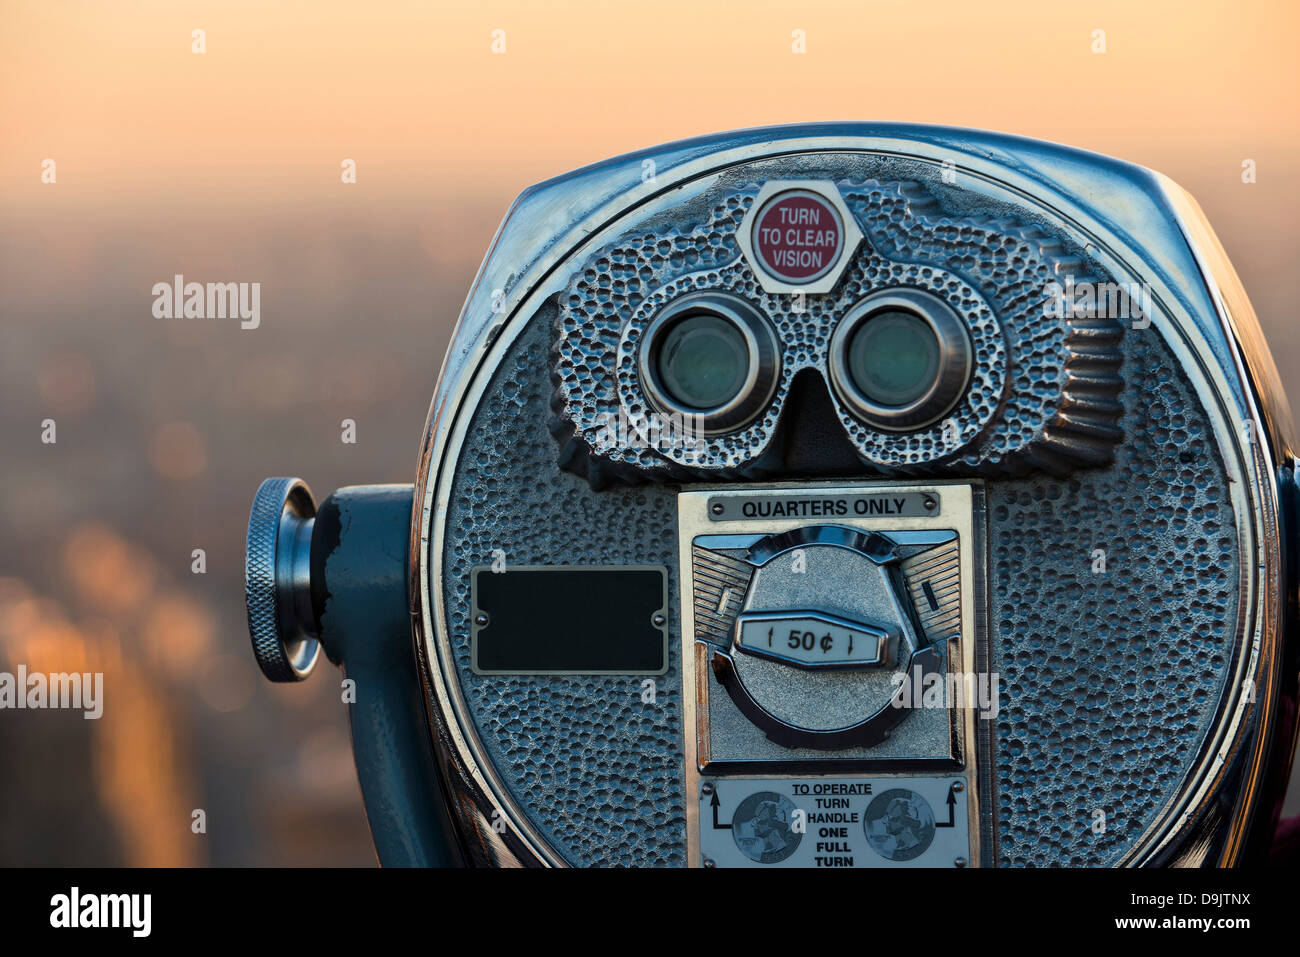 Coin operated binoculars, Manhattan, New York City, USA Stock Photo